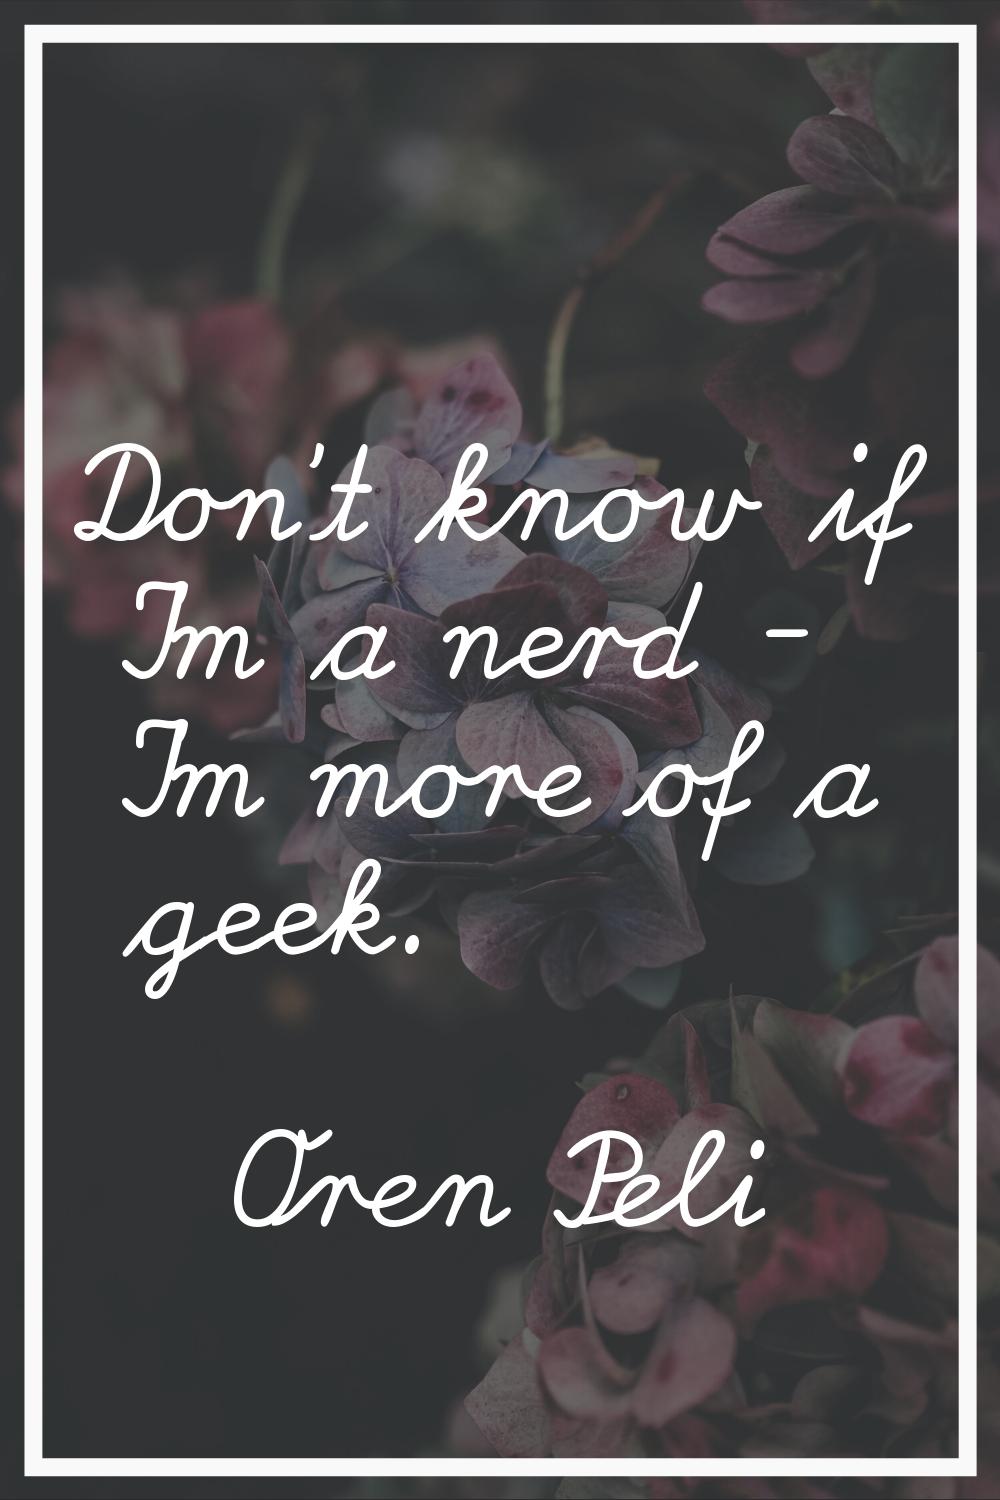 Don't know if I'm a nerd - I'm more of a geek.